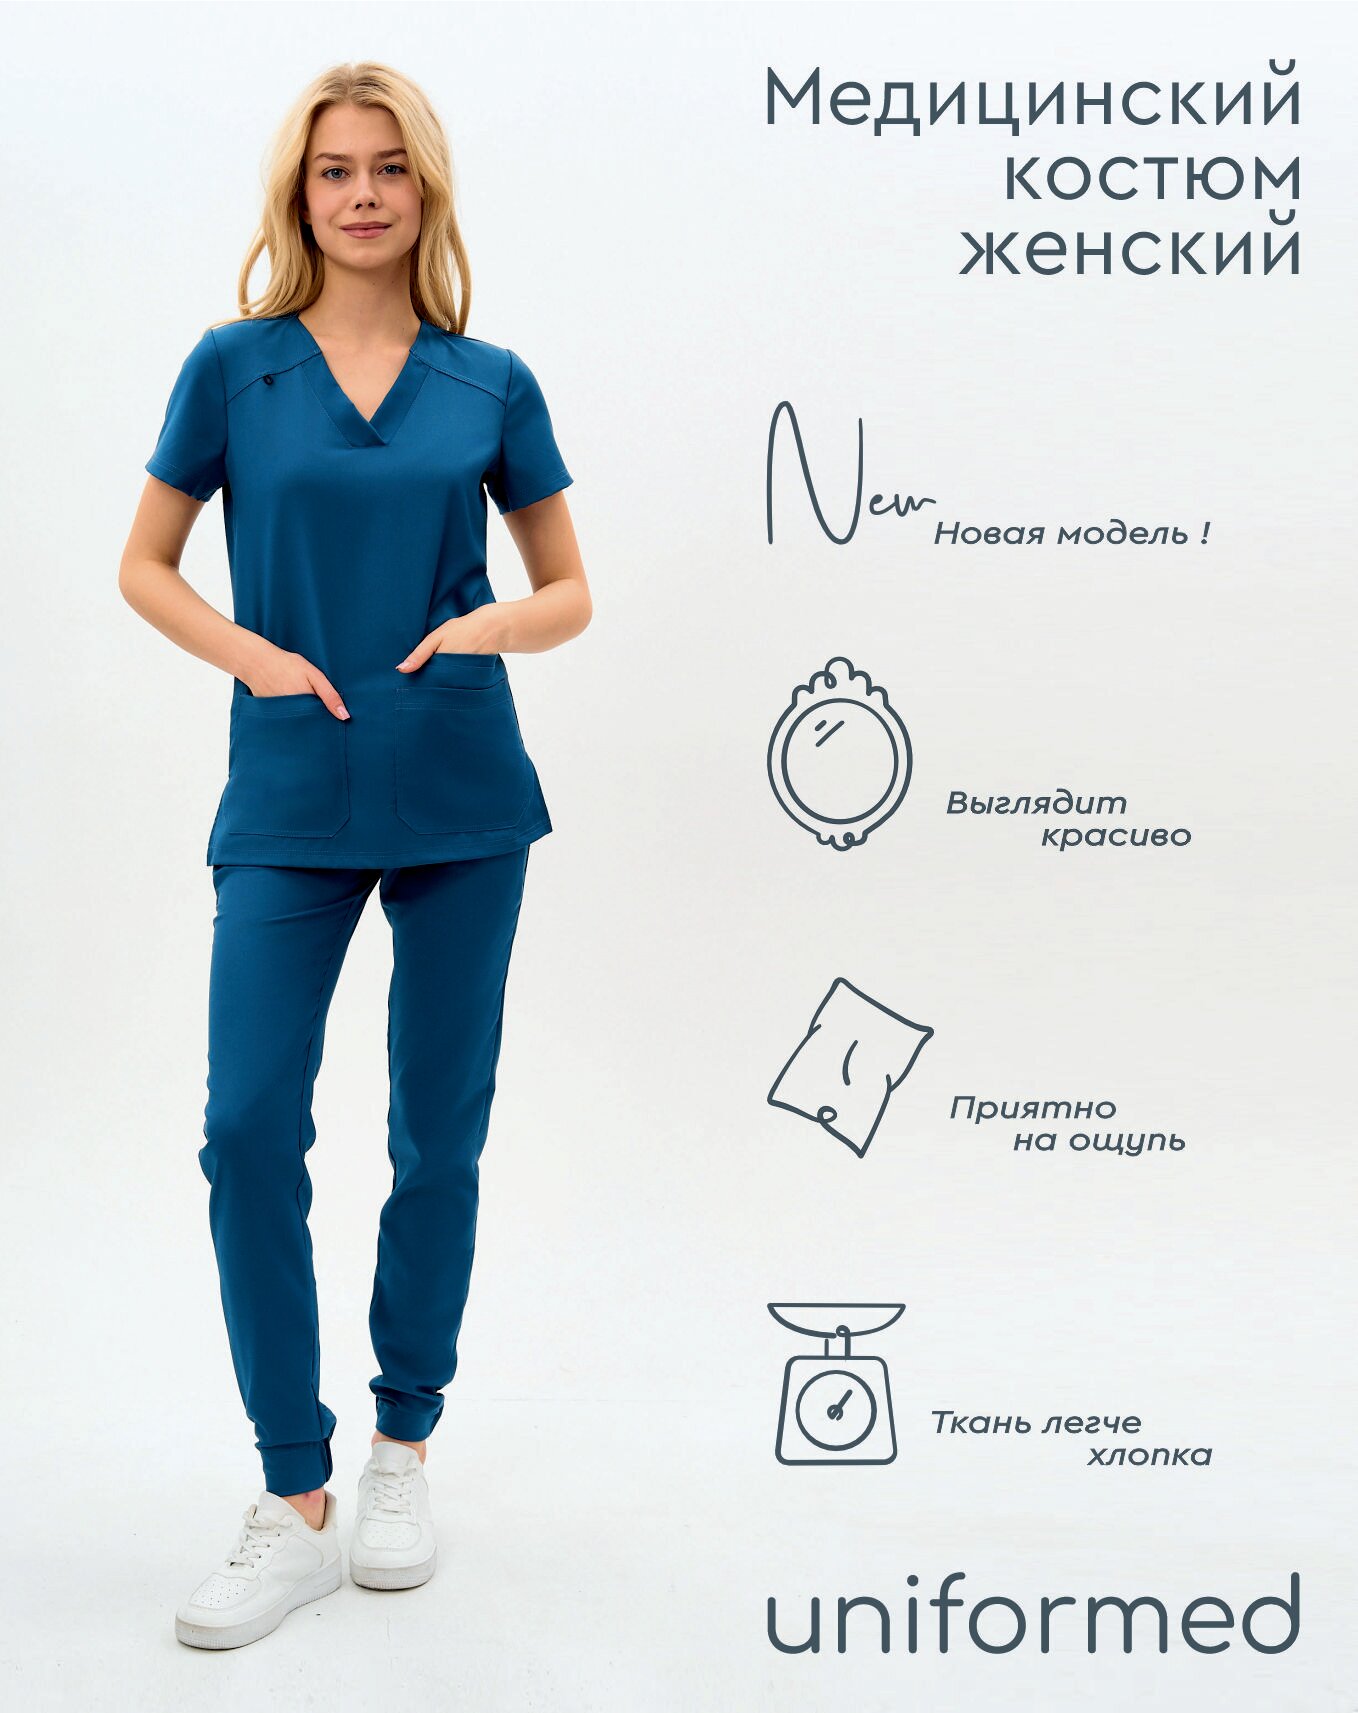 Медицинский женский костюм 419.5.5 Uniformed, ткань вискоза стрейч, рукав короткий, цвет синий, отделка черная, размер 52